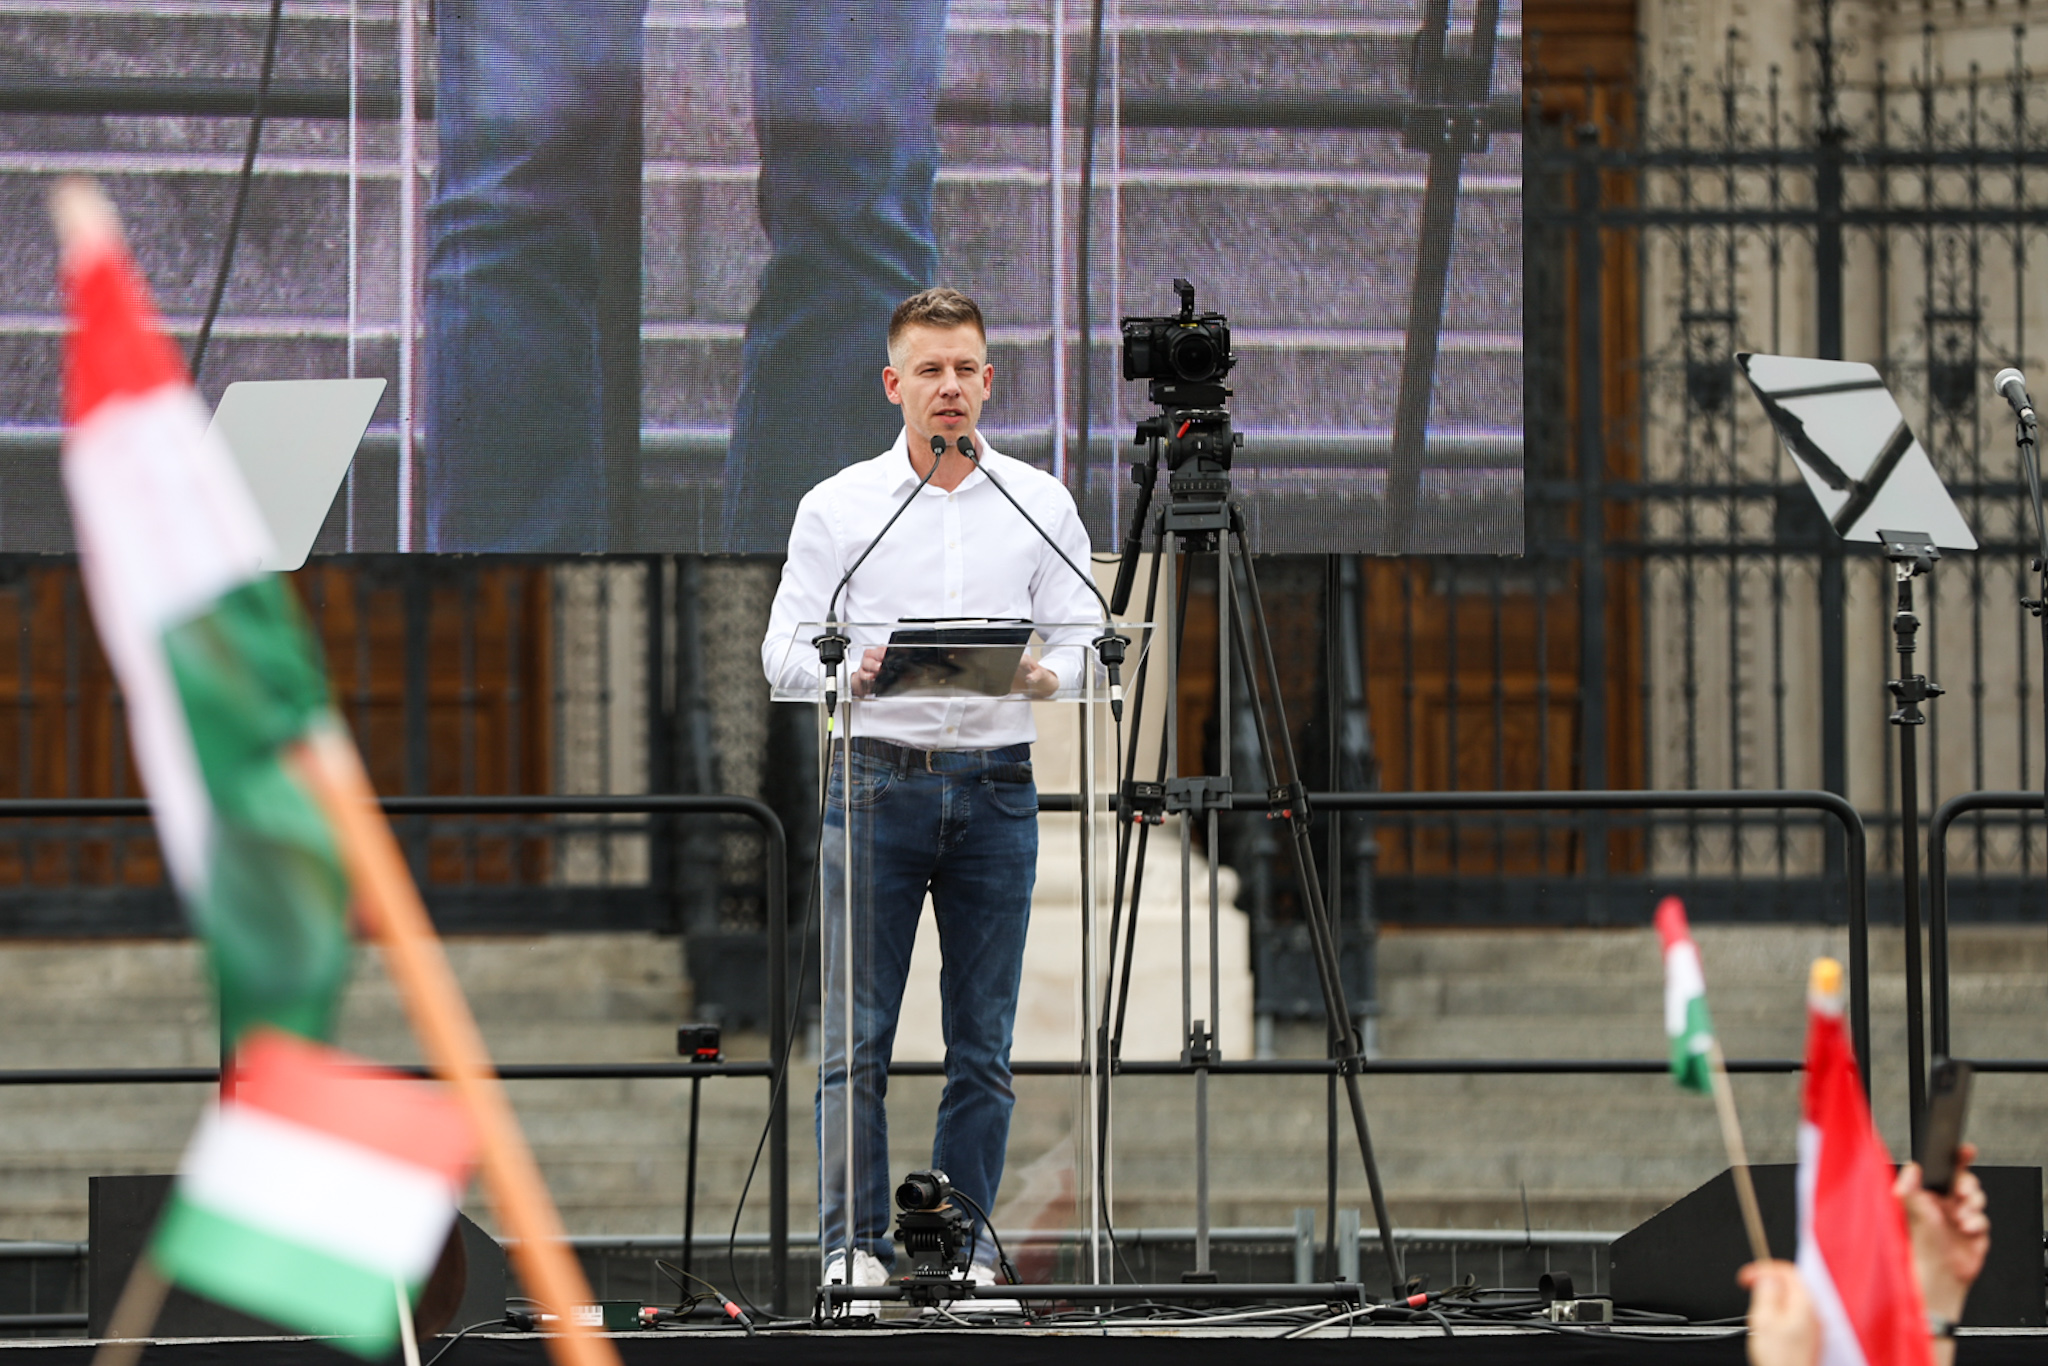 Magyar Péter: Sem a levitézlett ellenzéki politikusokra, sem a NER szereplőire nem vagyok kíváncsi